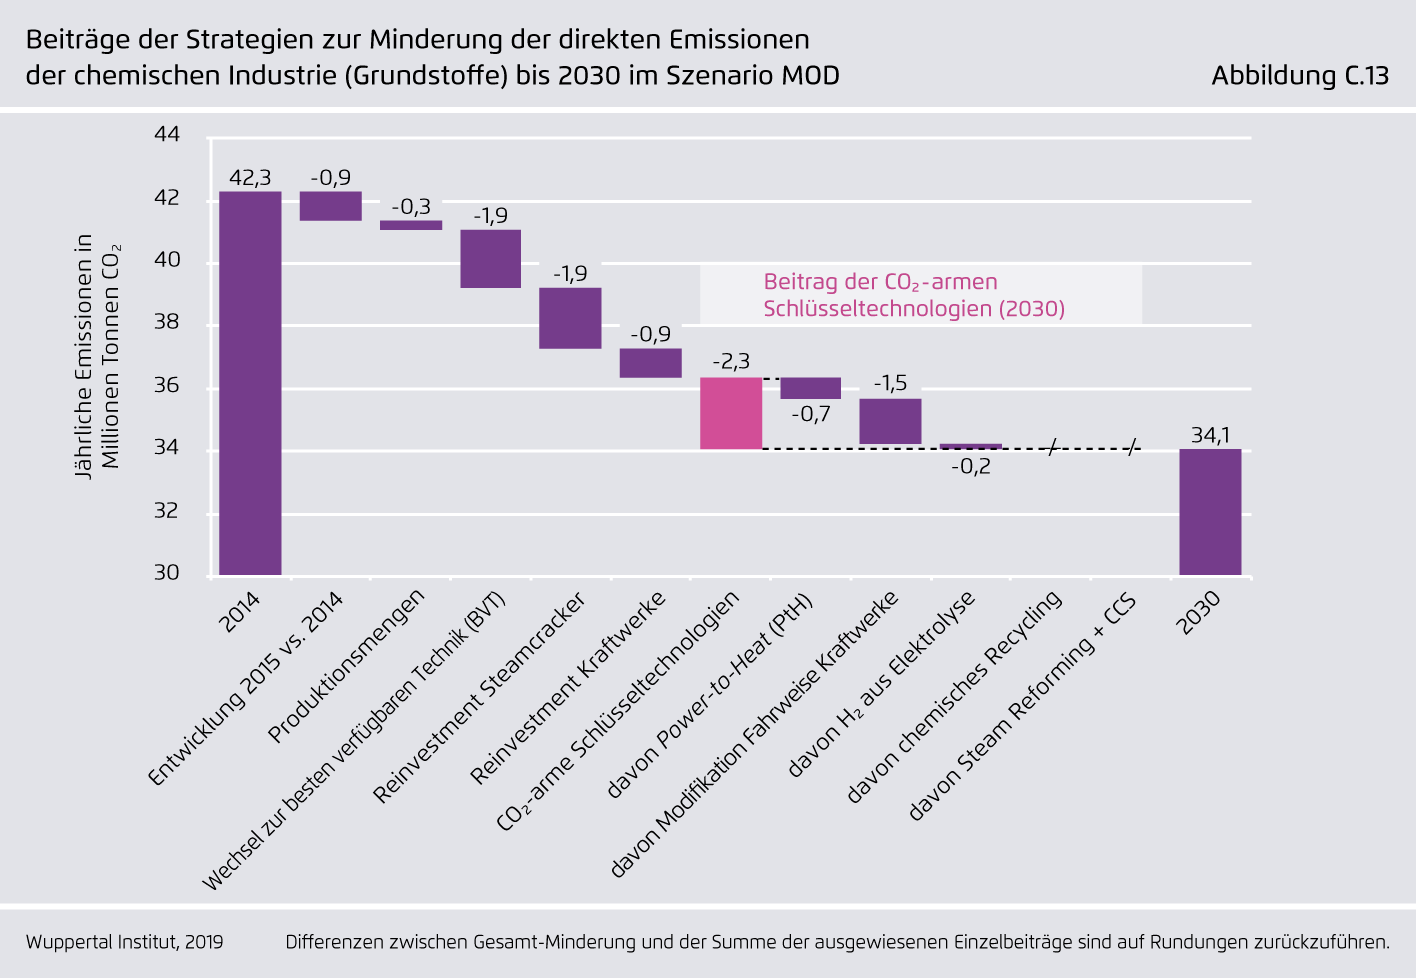 Preview for Beiträge der Strategien zur Minderung der direkten Emissionen der chemischen Industrie (Grundstoffe) bis 2030 im Szenario MOD